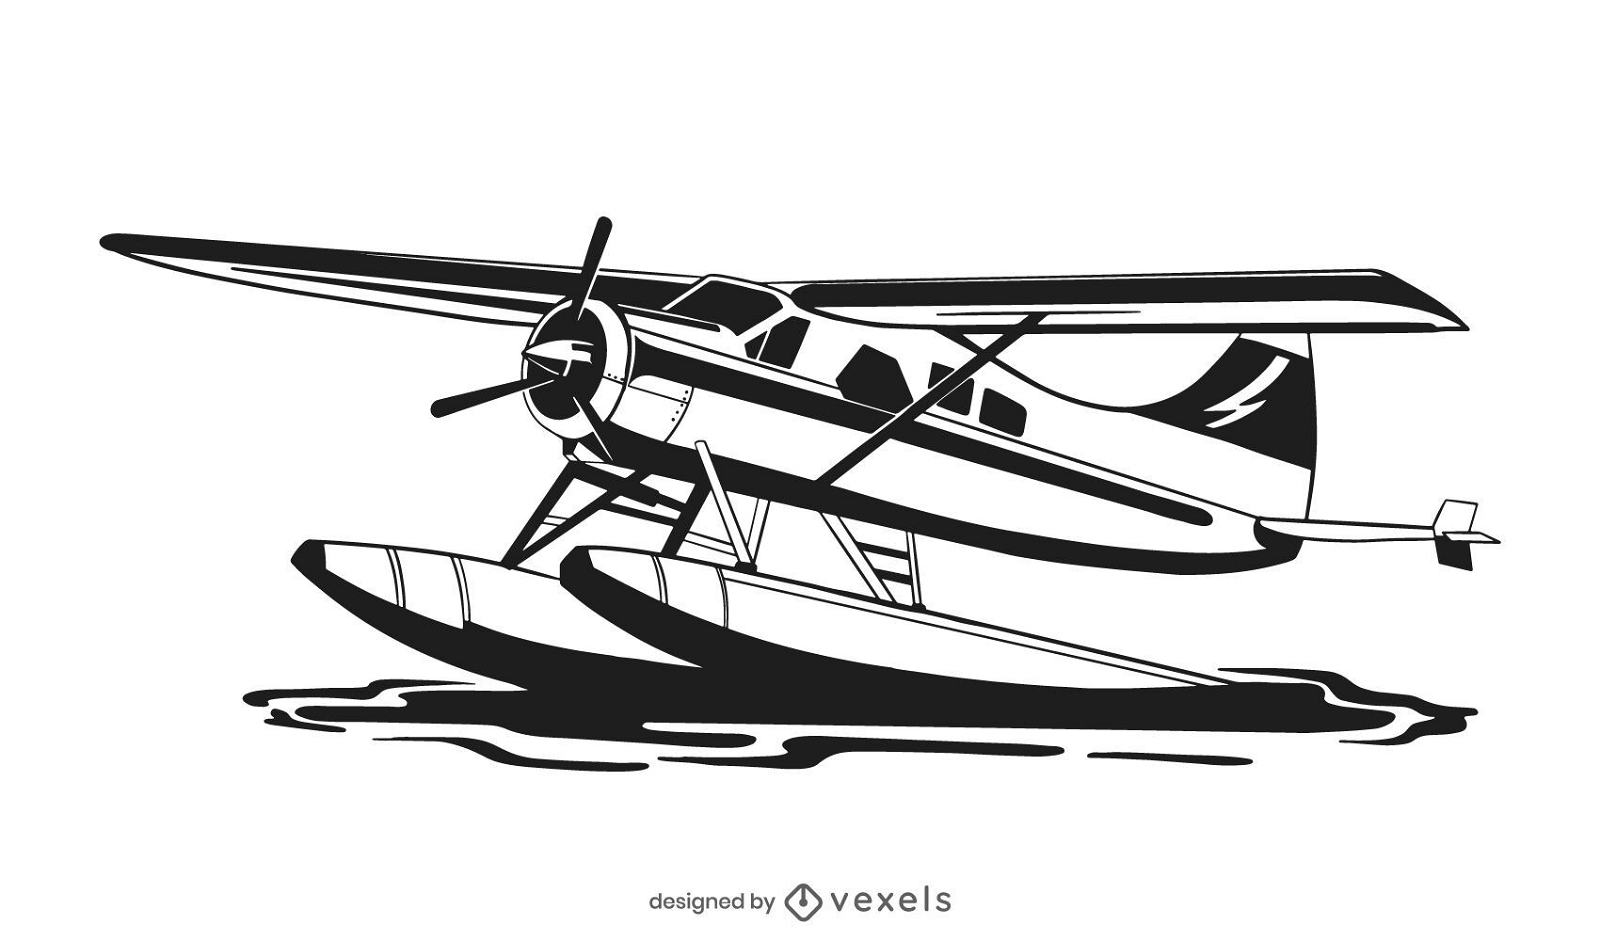 Wasserflugzeug-Flugzeug-Illustrations-Design